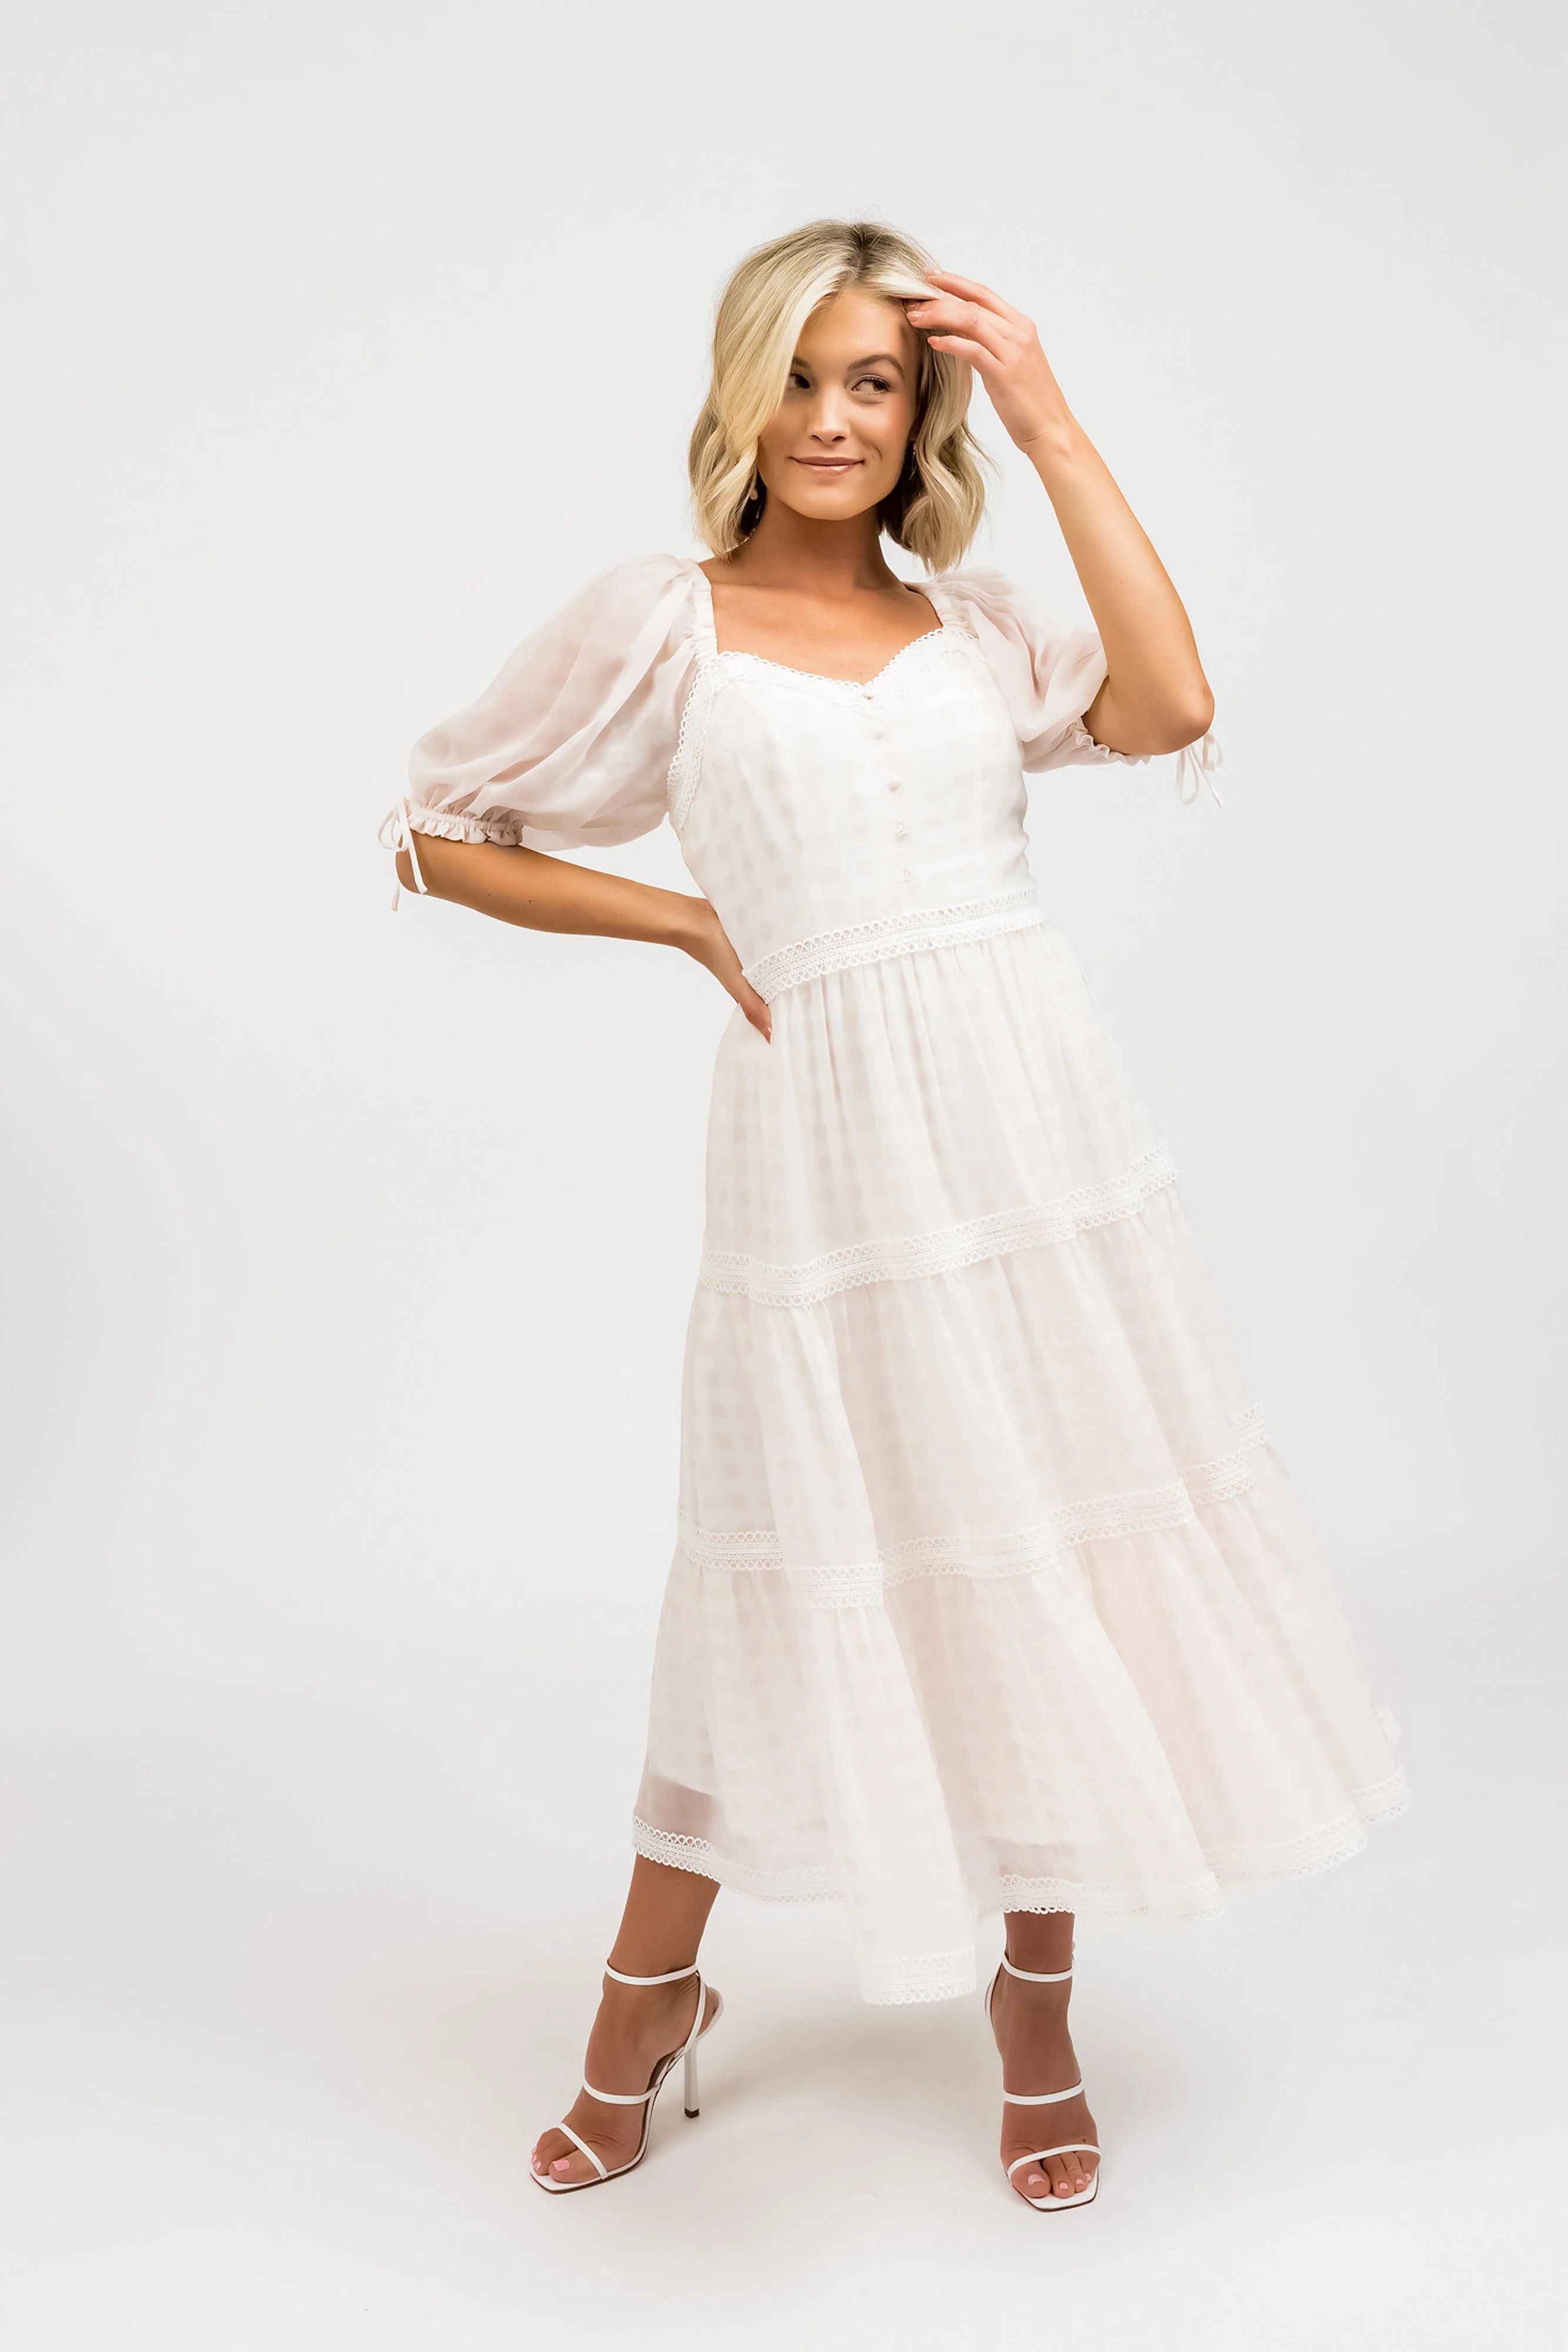 Chiffon Summer Dress - Pink Gingham | Rachel Parcell